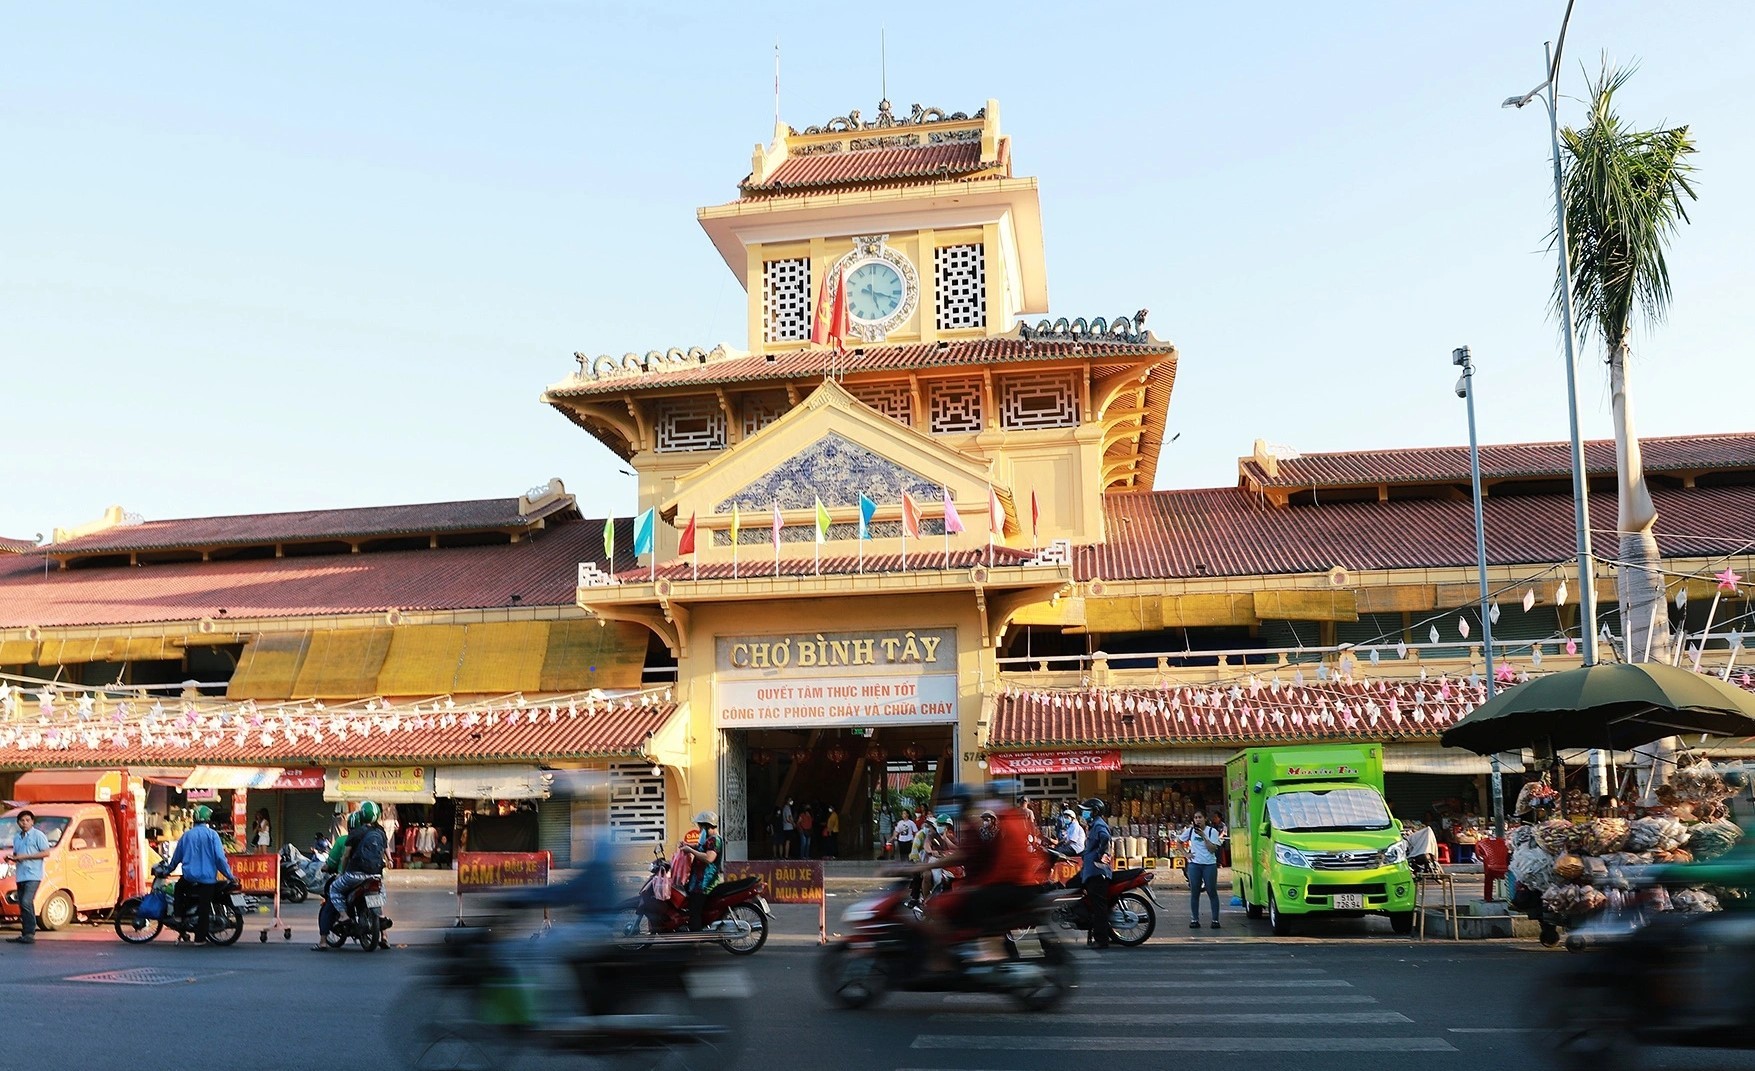 Chợ Bình Tây (hay còn gọi Chợ Lớn) được xem là trung tâm của cộng đồng người Việt gốc Hoa tại thành phố Hồ Chí Minh. (Ảnh: KT)